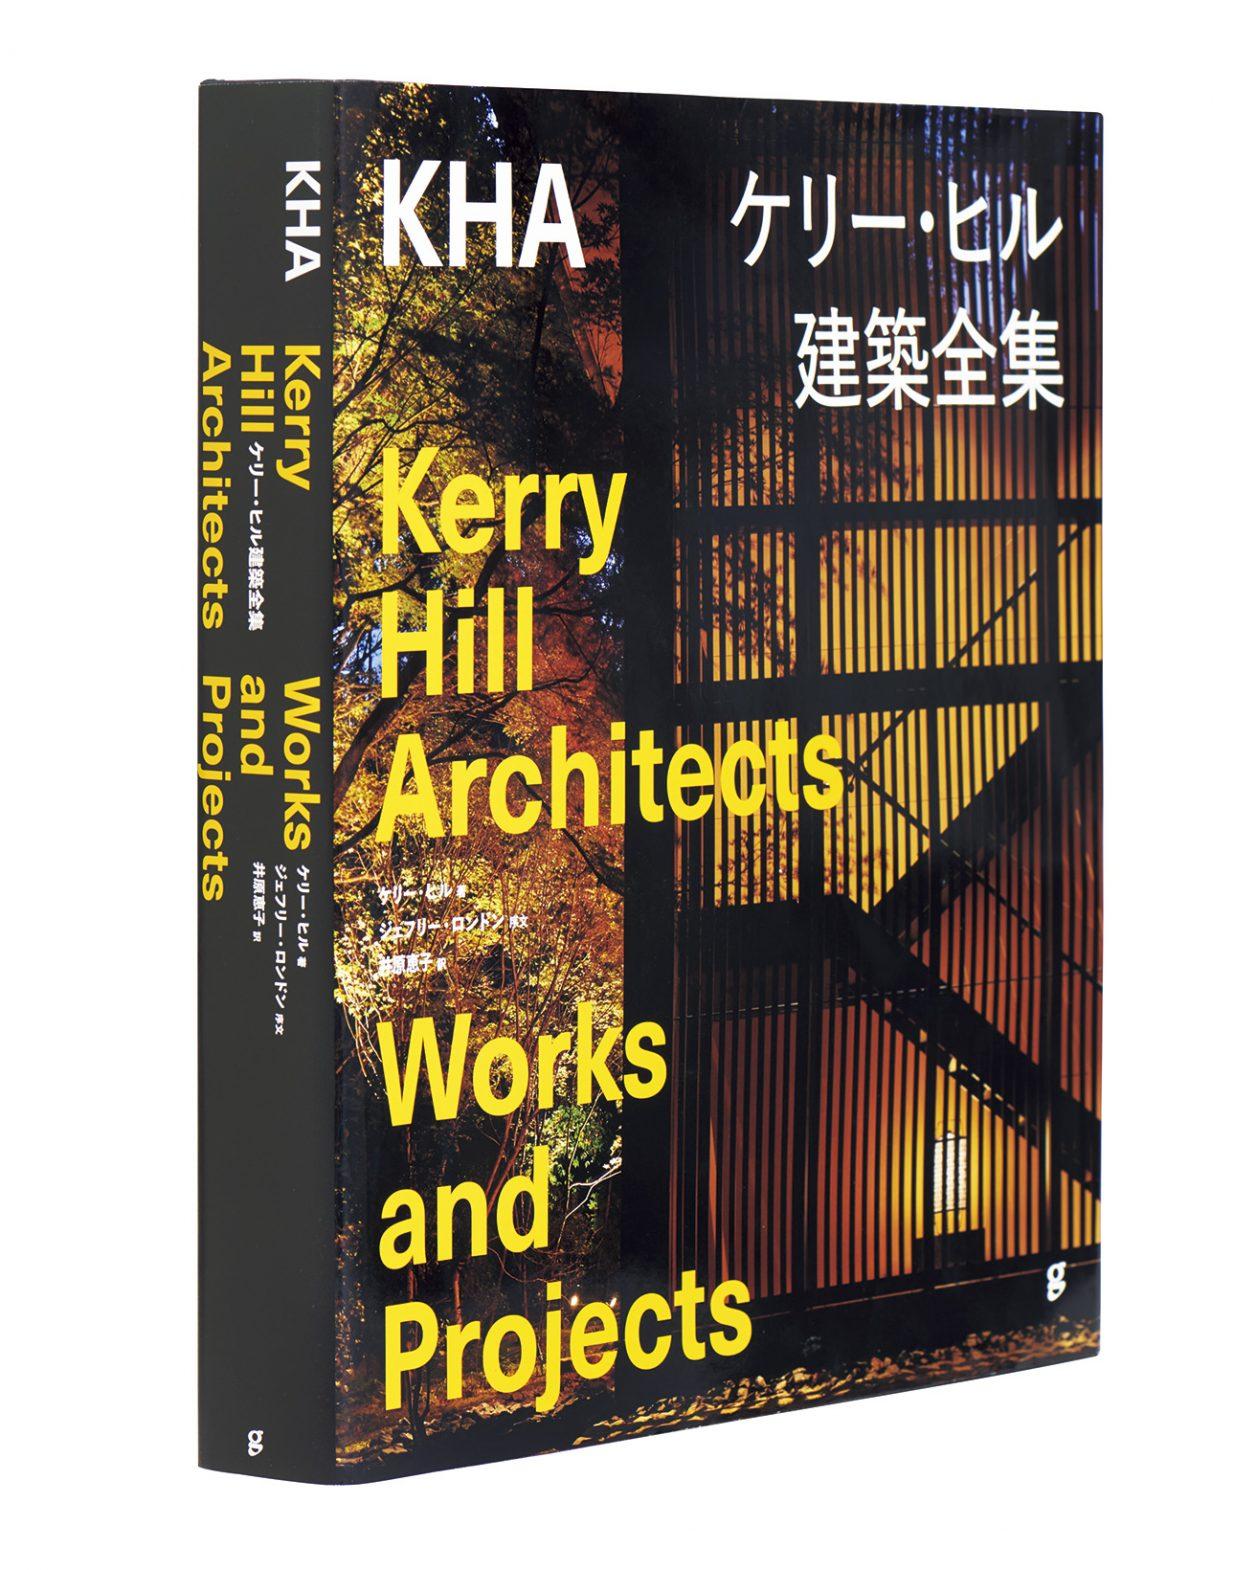 ケリー・ヒル建築の30年の軌跡をたどる一冊。